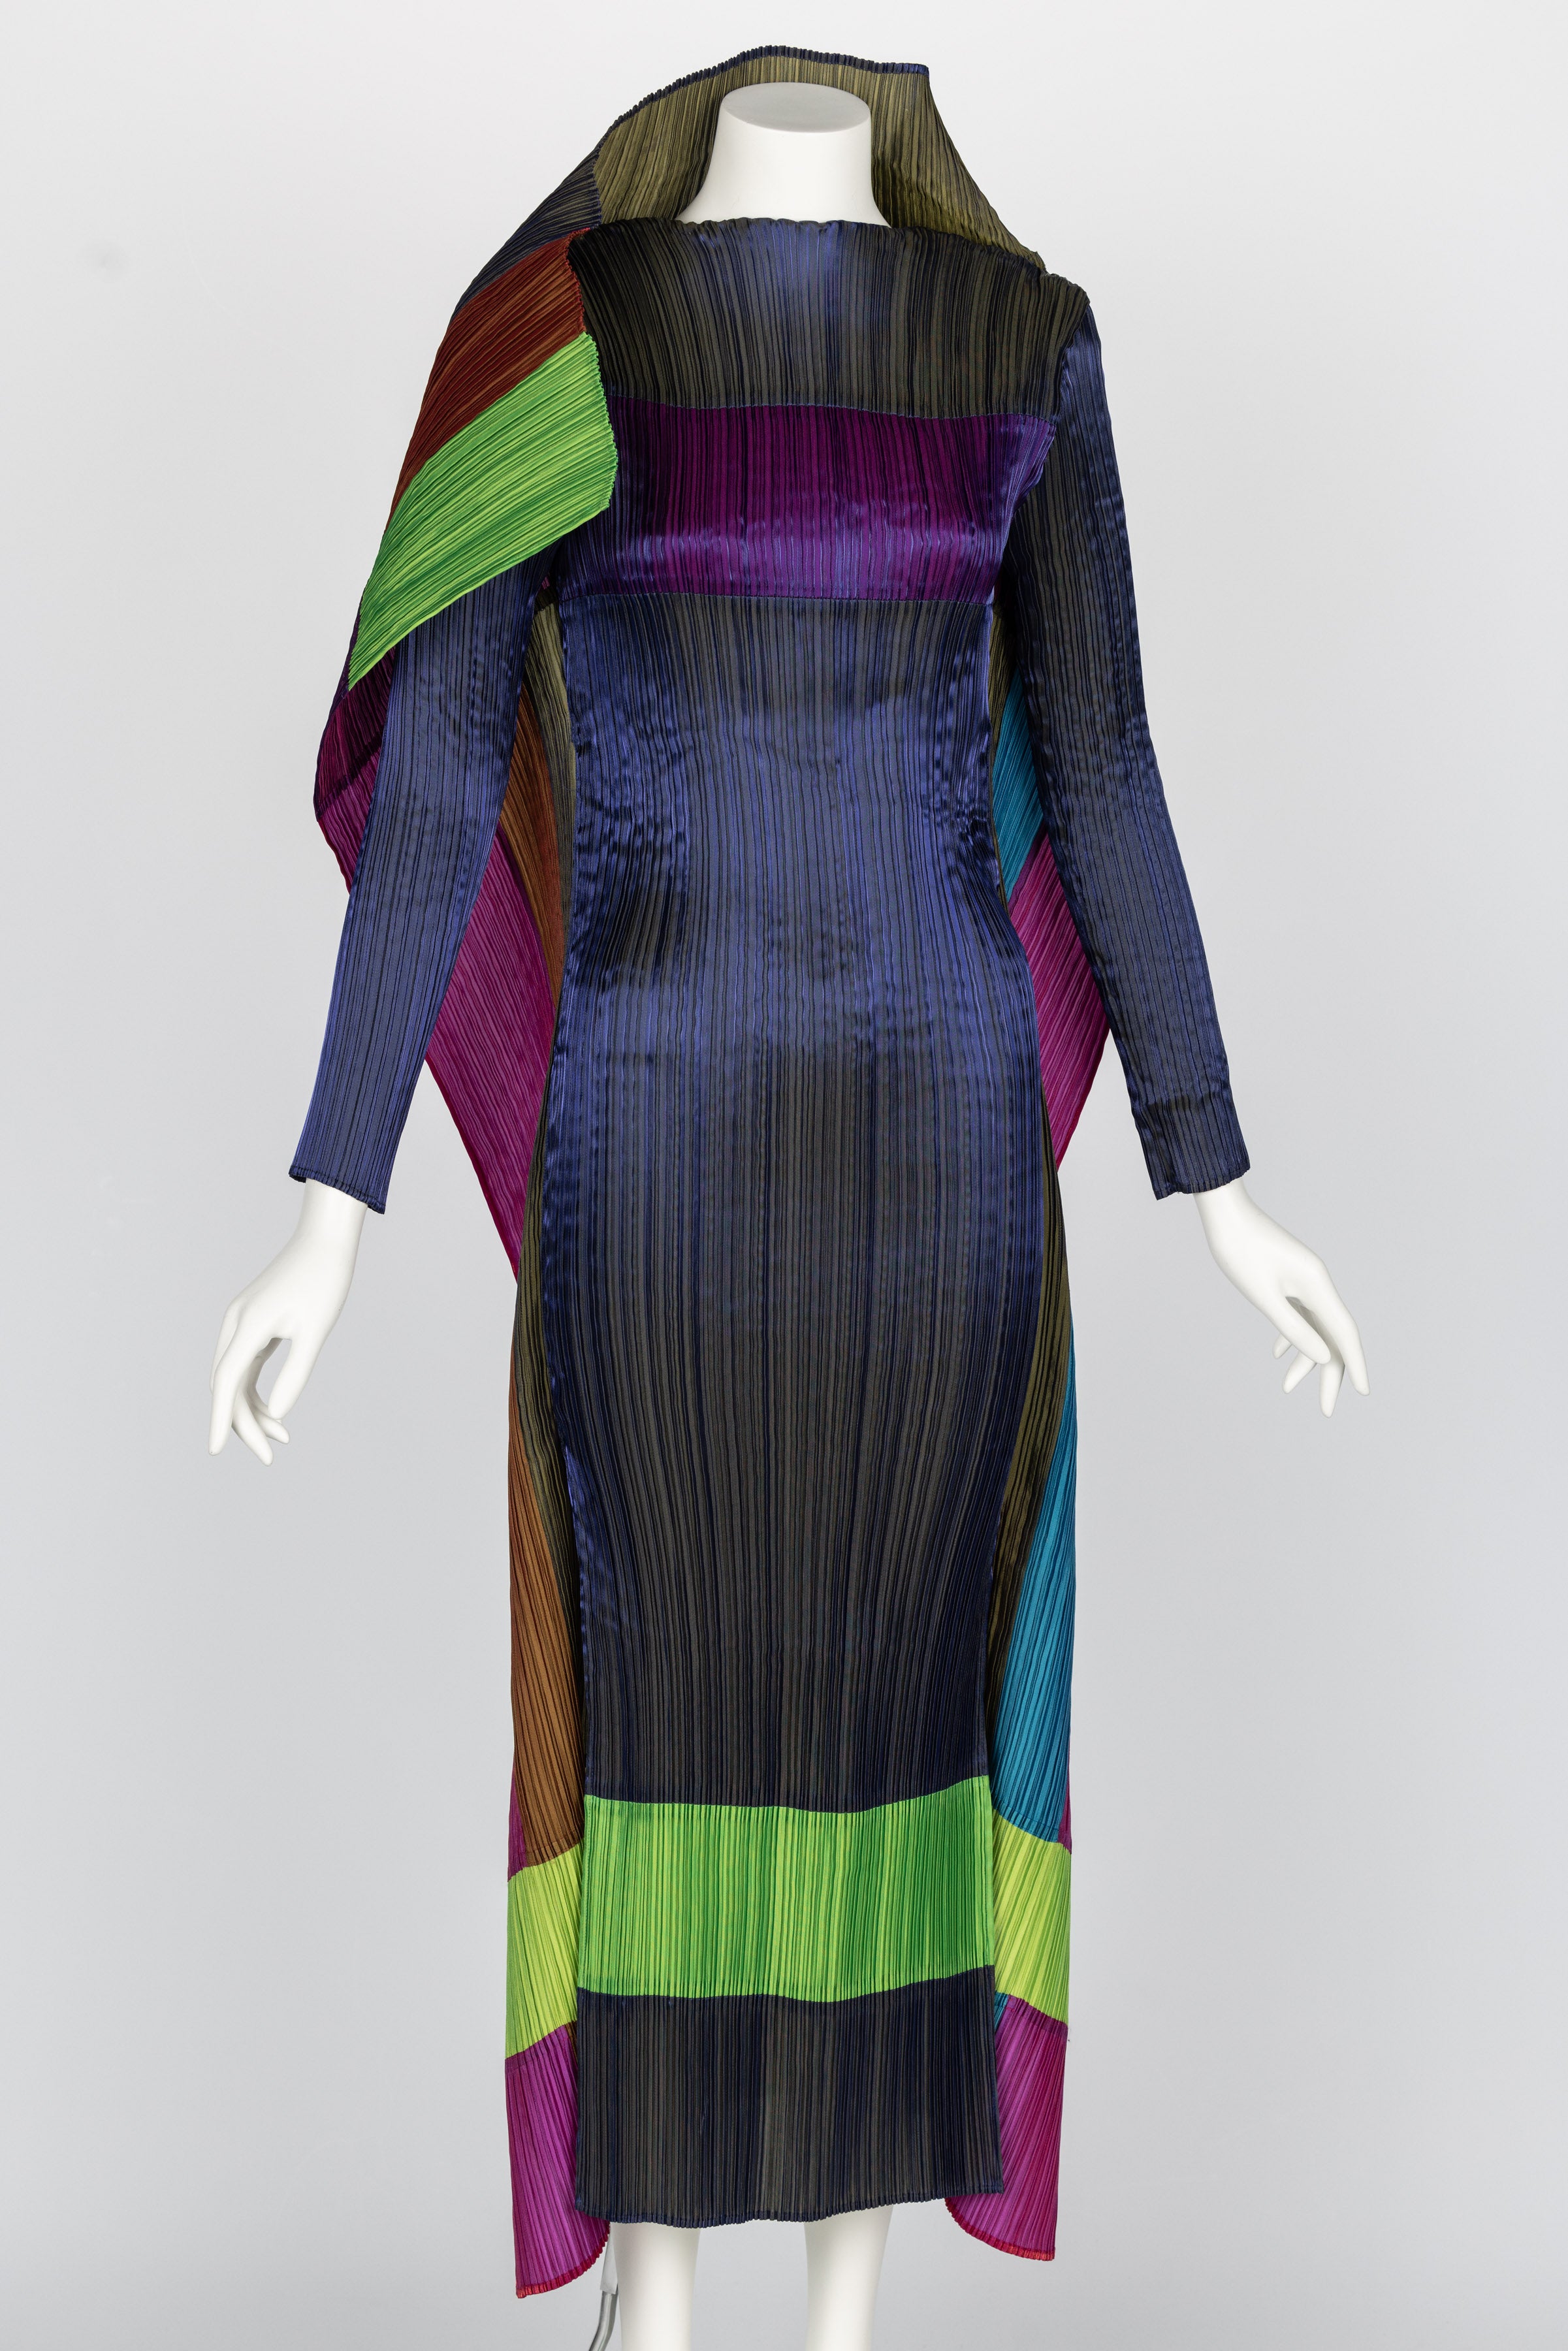 Le designer futuriste Issey Miyake est passé maître dans l'art de créer des œuvres d'art sculpturales en tissu. Son découpage innovant des motifs et son utilisation caractéristique du micro-plis donnent à ses vêtements une forme A unique. En tant